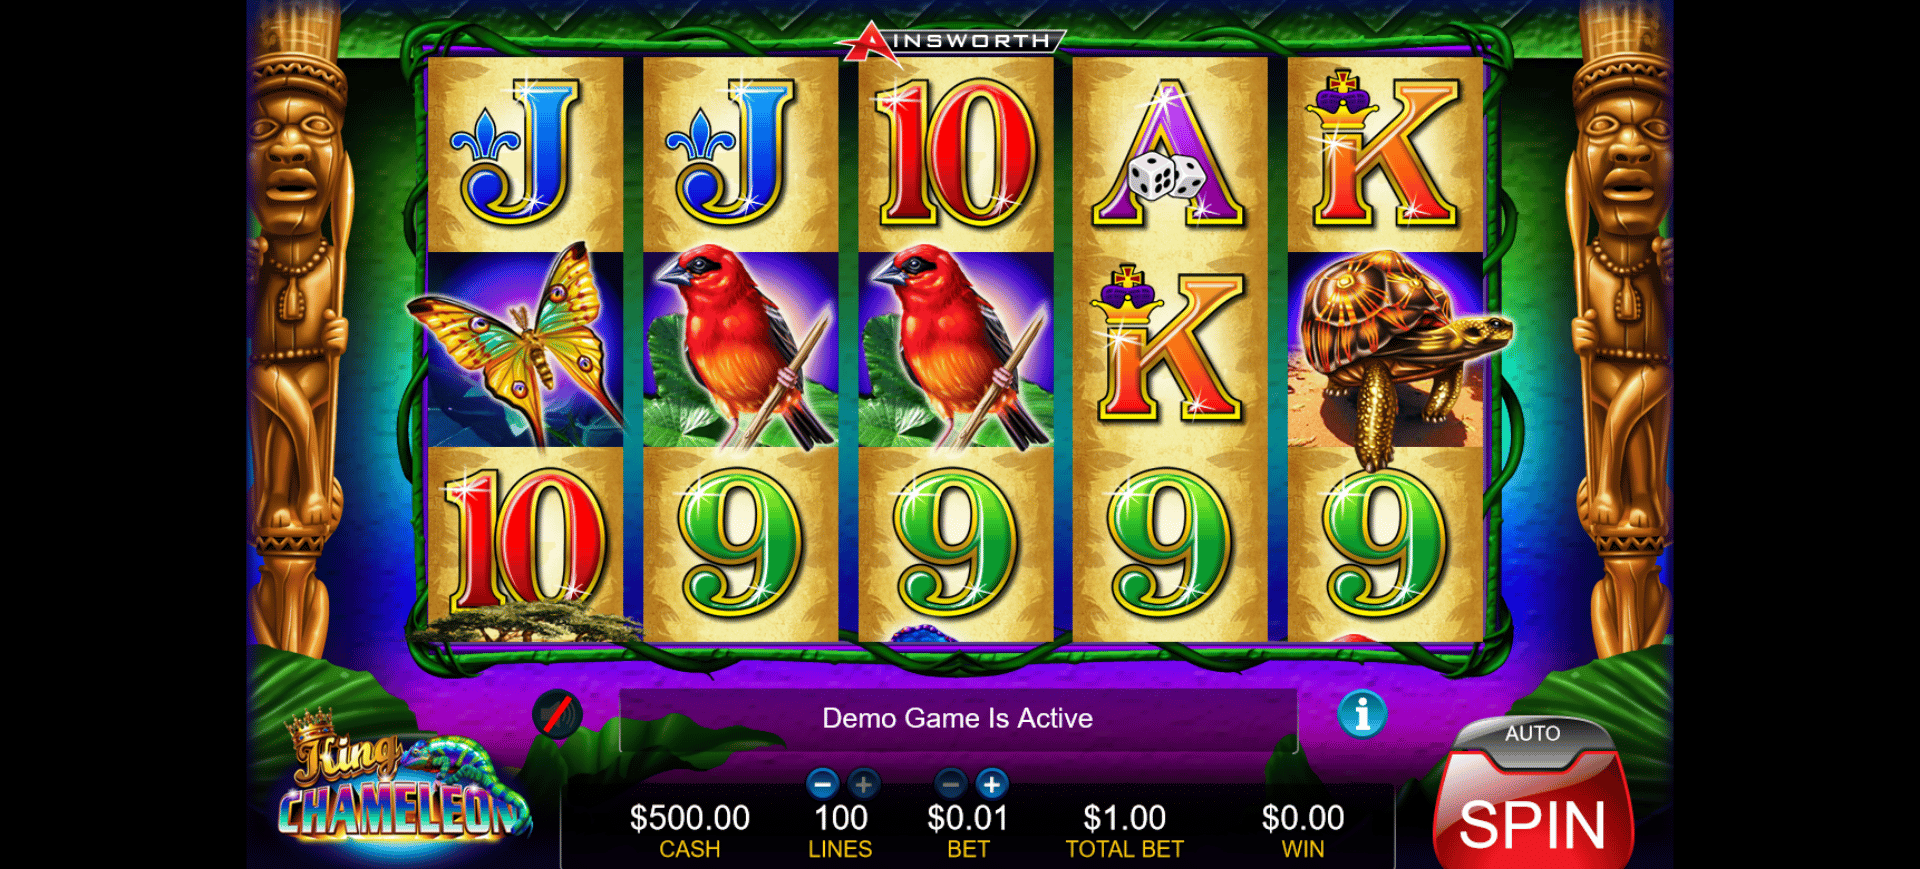 schermata del gioco slot machine king chameleon